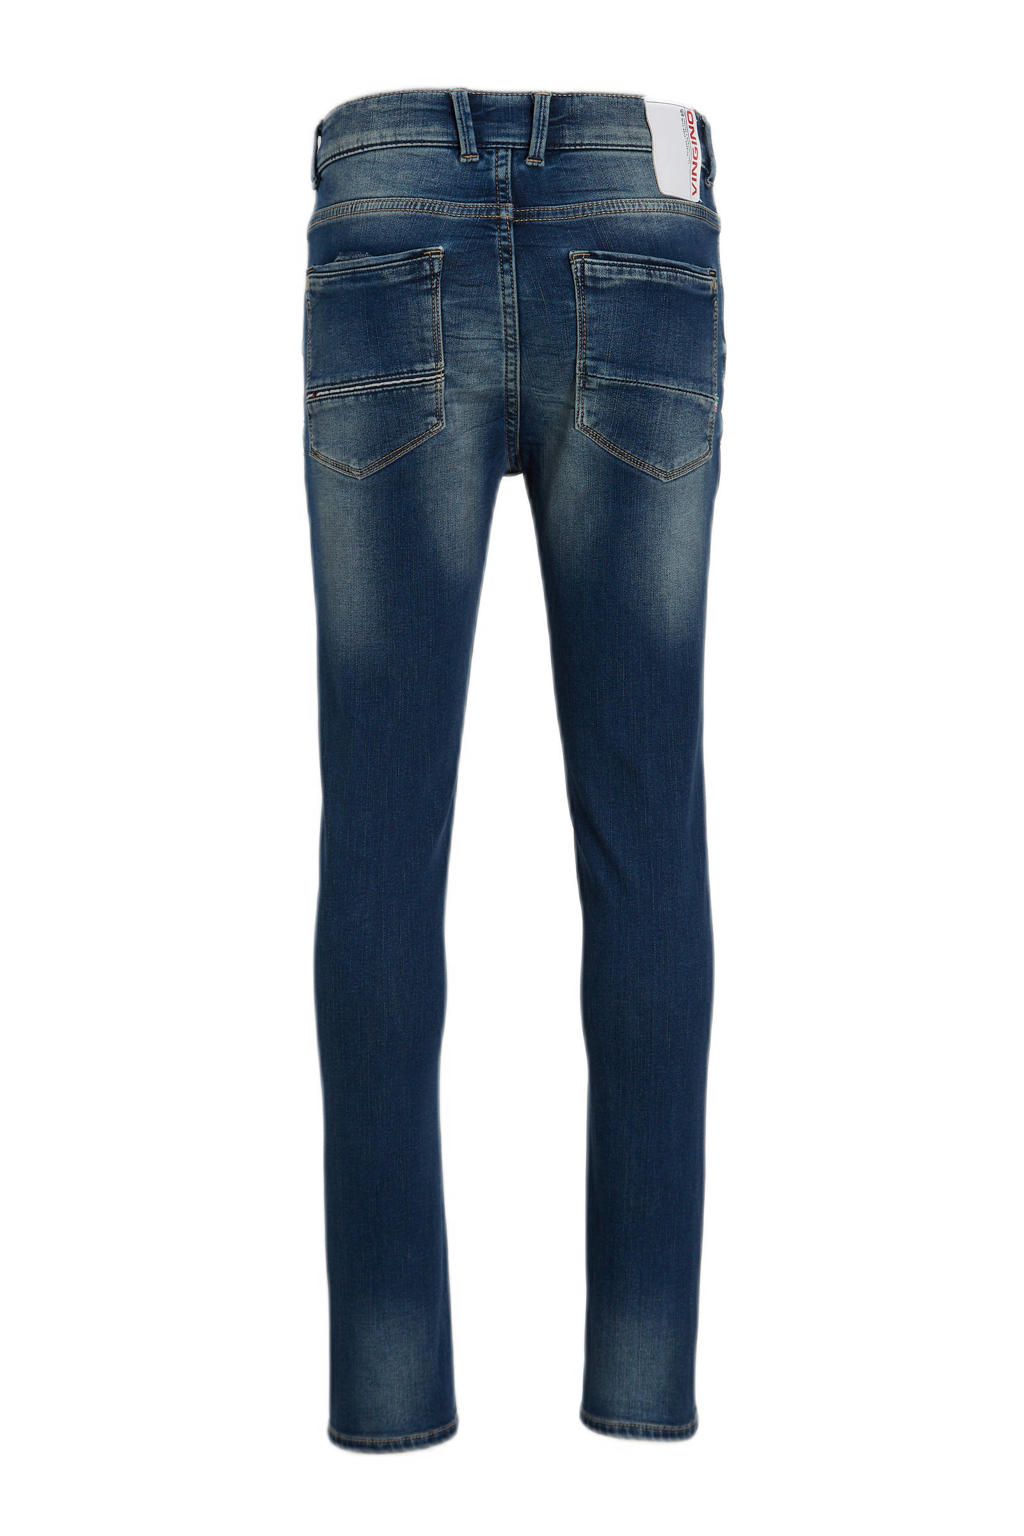 Vingino skinny jeans Amos mid blue wash | wehkamp